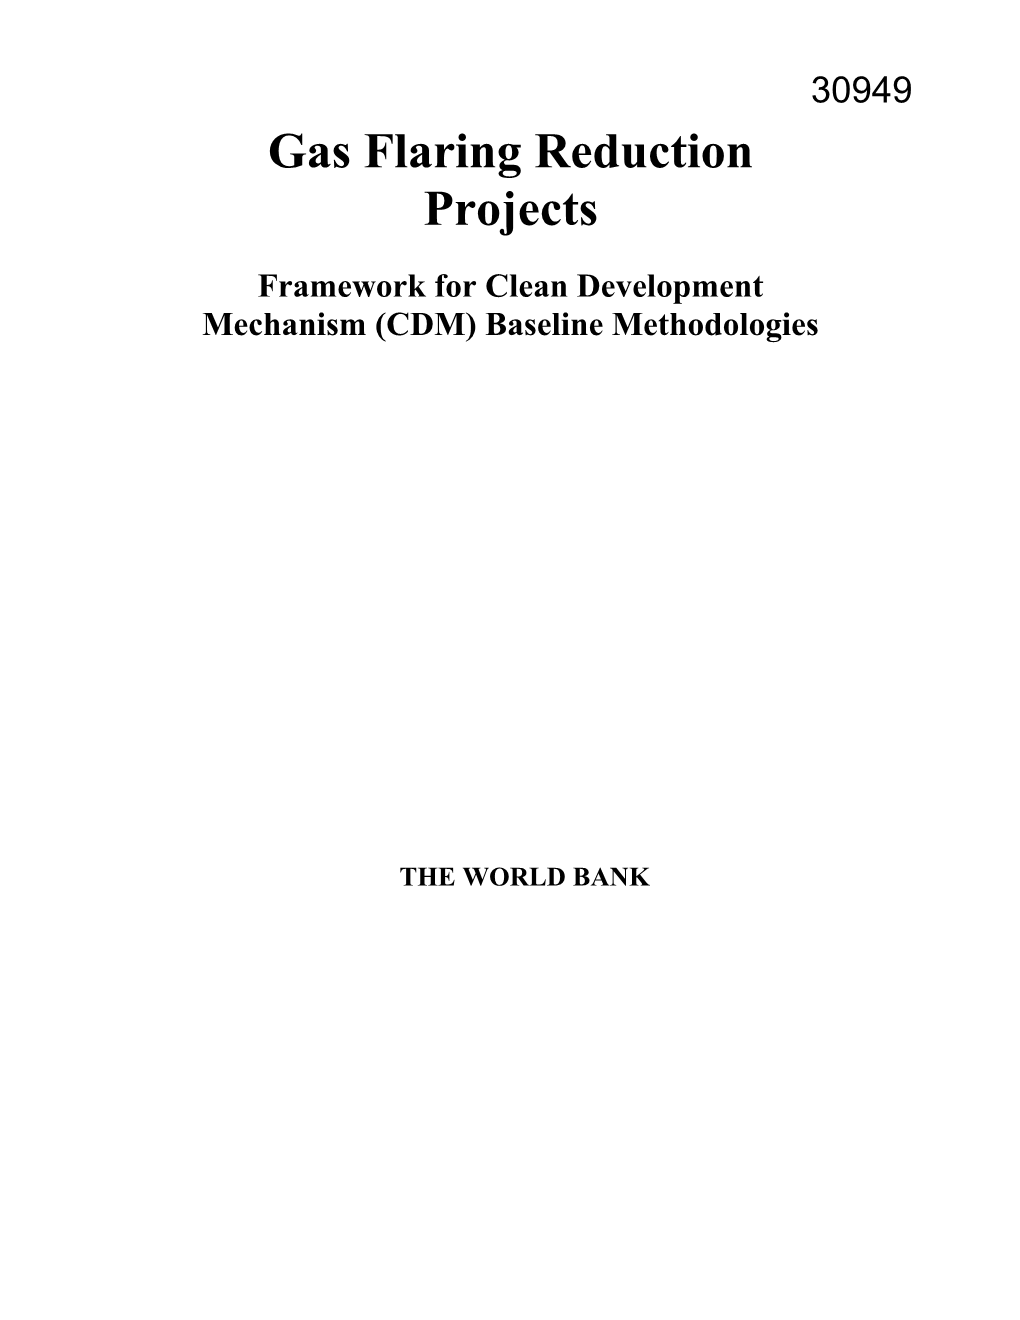 Framework for Clean Development Mechanism (CDM) Baseline Methodologies